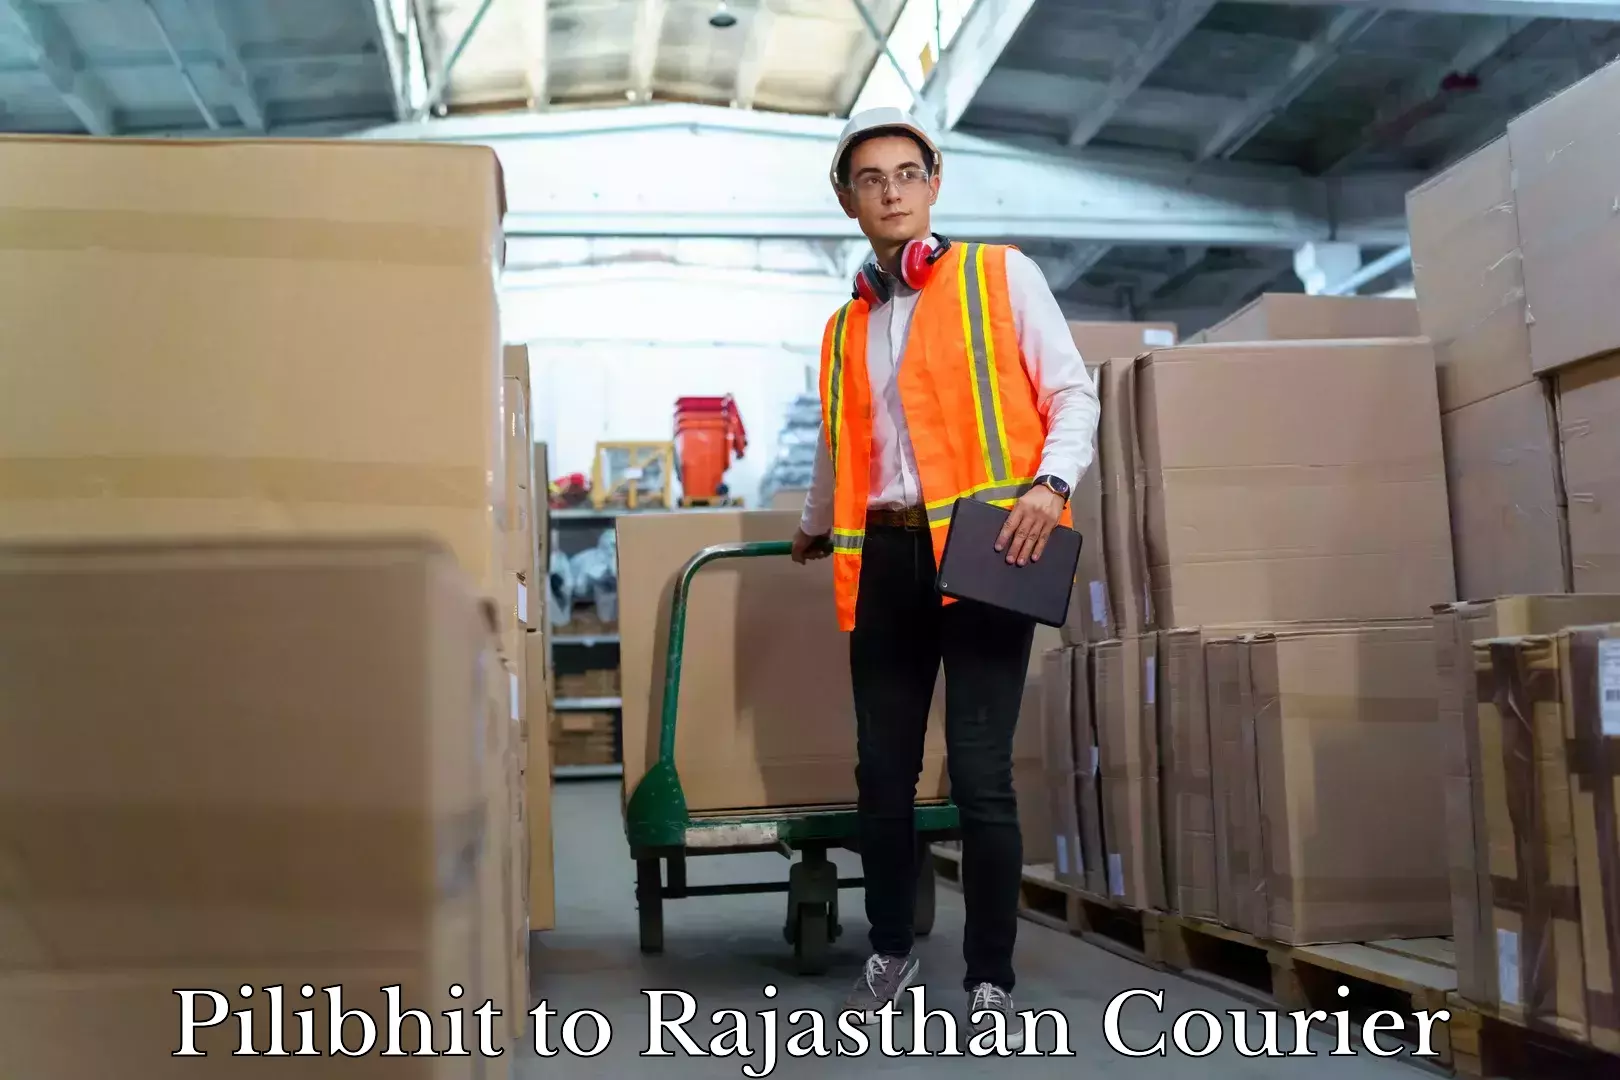 Furniture moving experts Pilibhit to Rajasthan